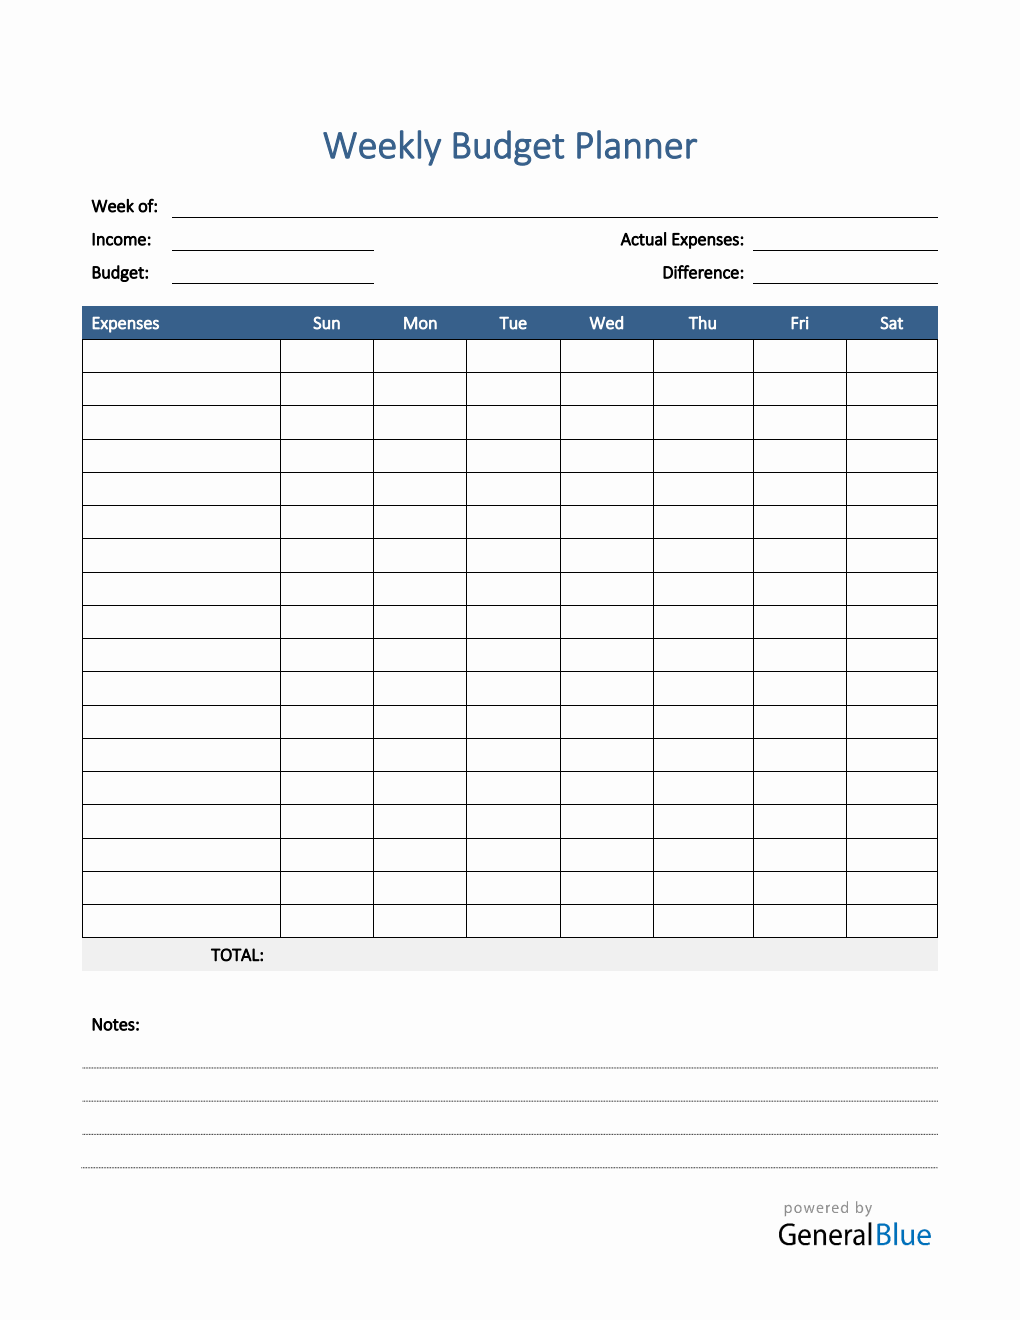 Weekly Budget Planner in Word (Printable)